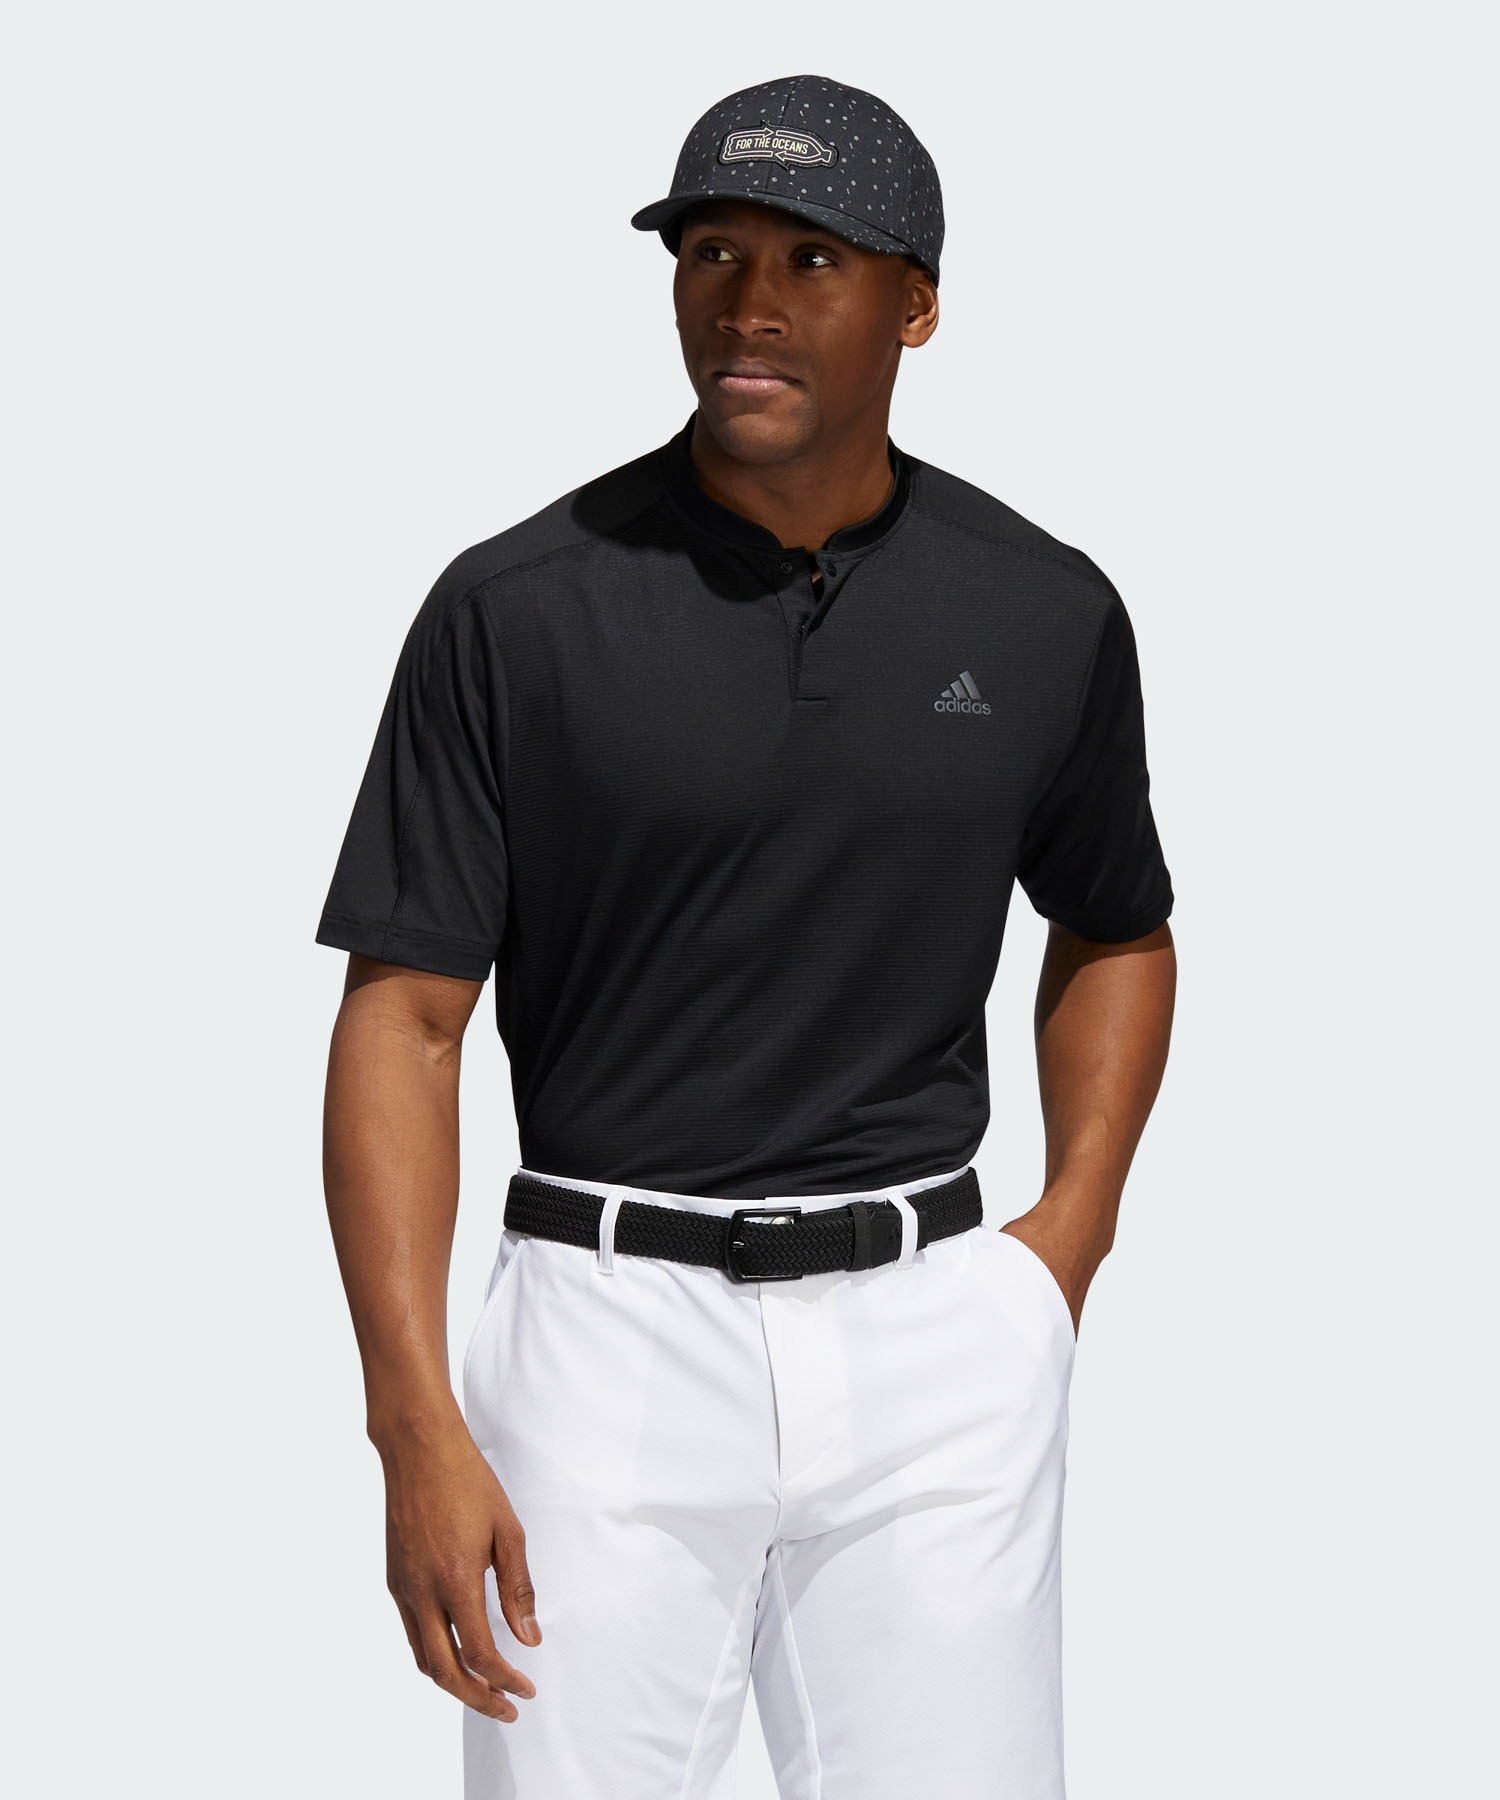 adidasソリッド 半袖ボタンスタンドカラーシャツ 最新人気 adidas Golf 若者の大愛商品 アディダスゴルフ